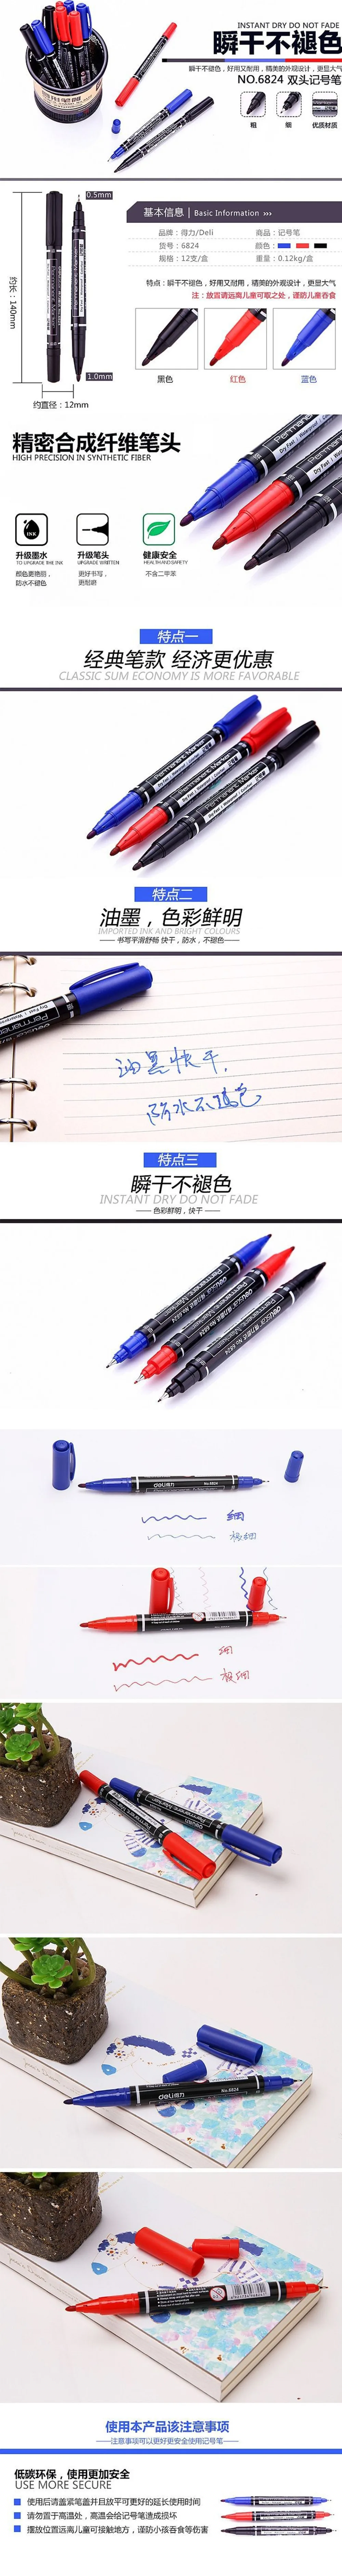 Новинка, Xiaomi deli, черная метка, ручка с двумя головками, многофункциональная, маслянистая, фирменная ручка, Марк ксиоми, ручка с крюком, ручка для клубной обсуждения